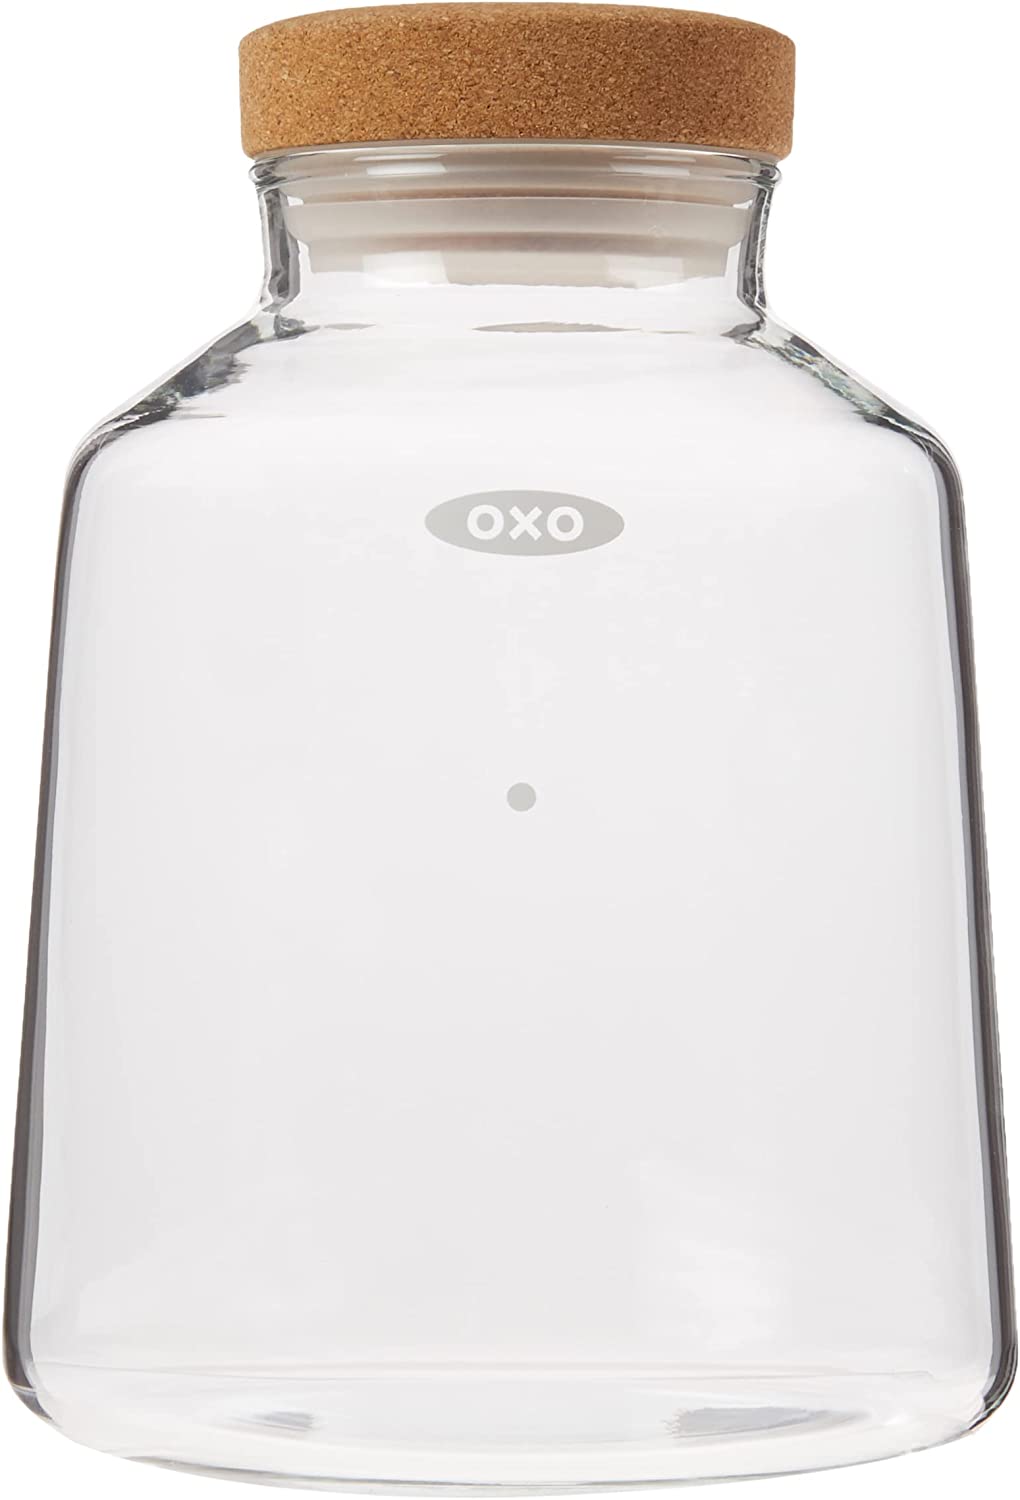 OXO BREW Compact Cold Brew Coffee Maker - NEW IN BOX - Black Color